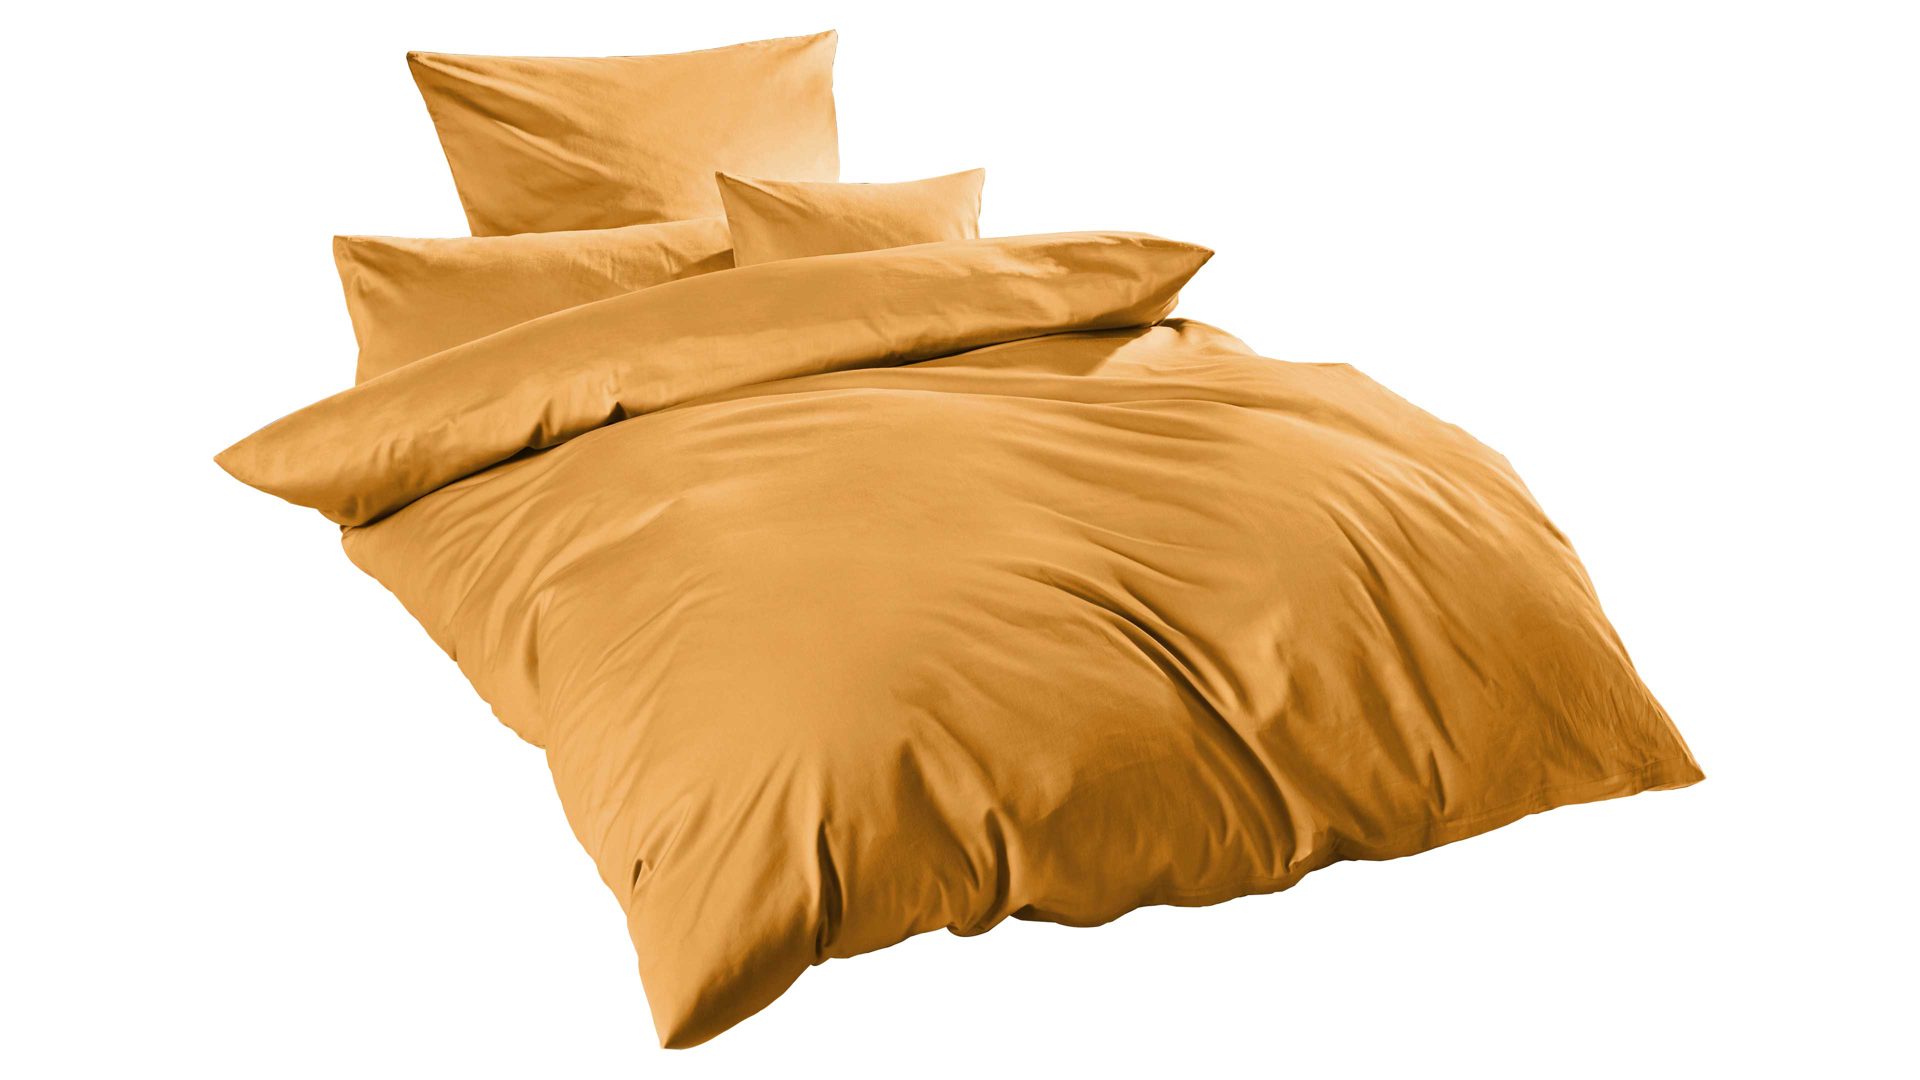 Bettwäsche-Set H.g. hahn haustextilien aus Stoff in Gelb HAHN Luxus-Satin-Bettwäsche Sempre senffarbener Baumwollsatin - zweiteilig, ca. 135 x 200 cm